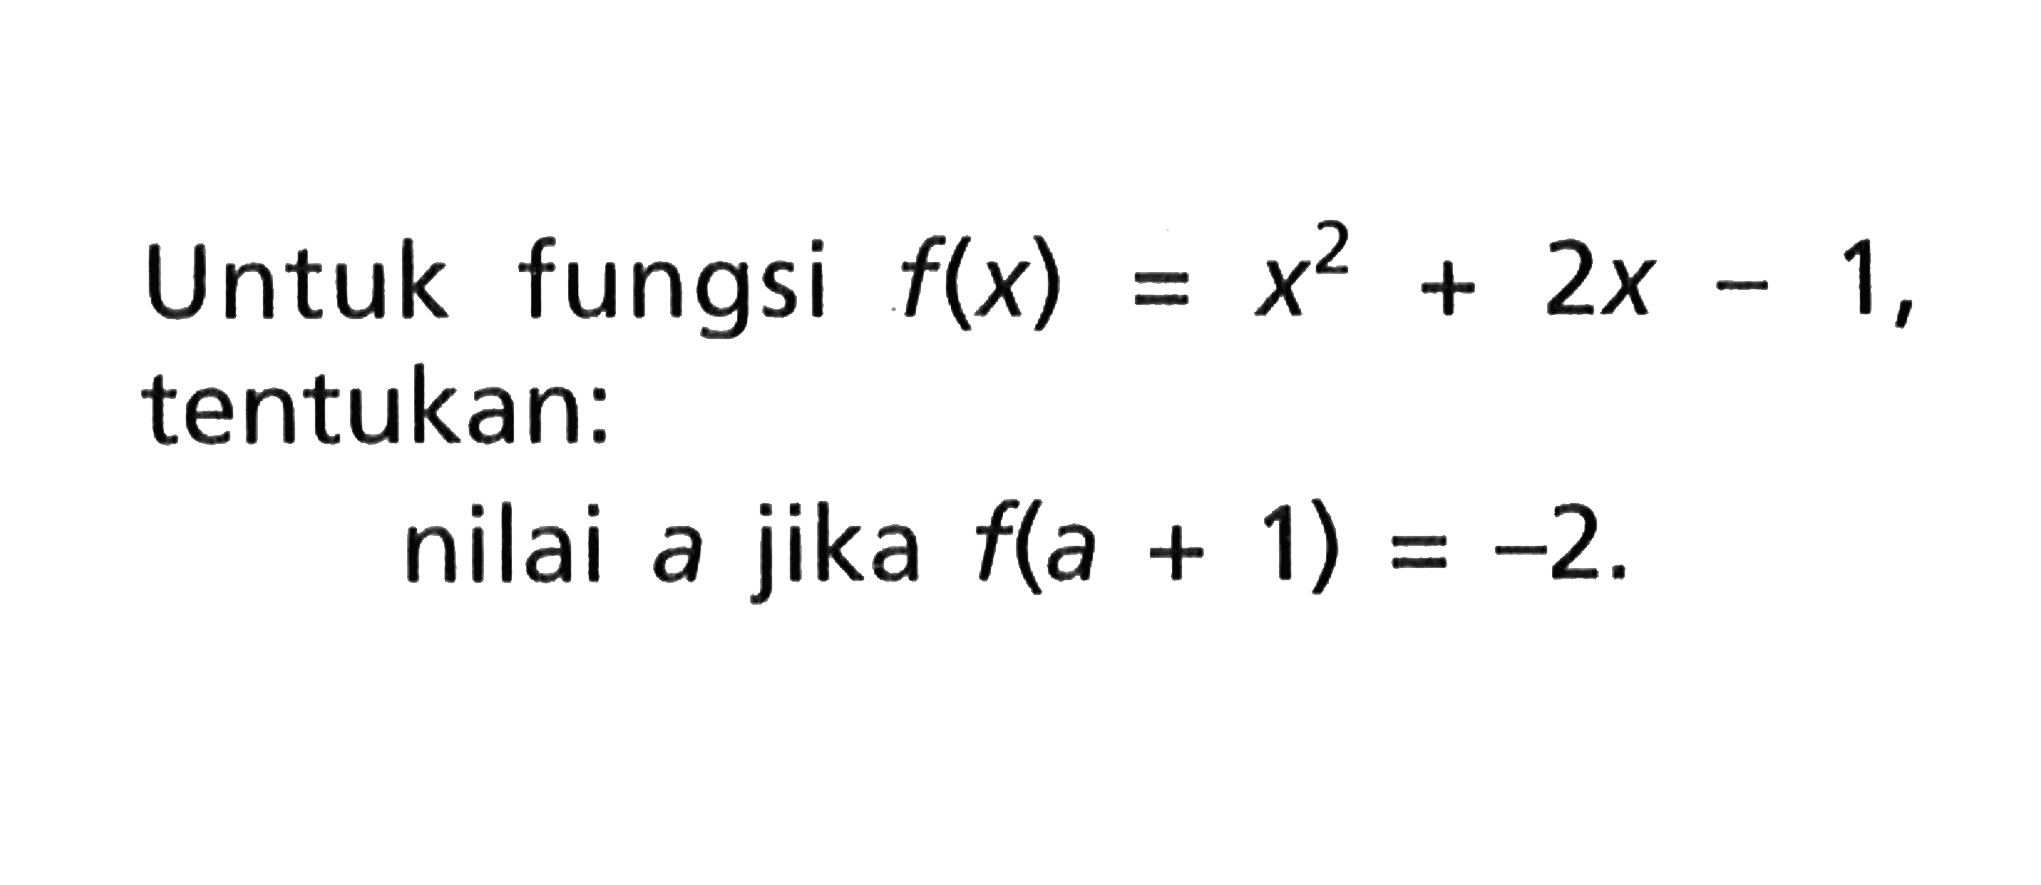 Untuk fungsi f(x) = x^2+2x-1, tentukan: nilai a jika f(a+1)=-2